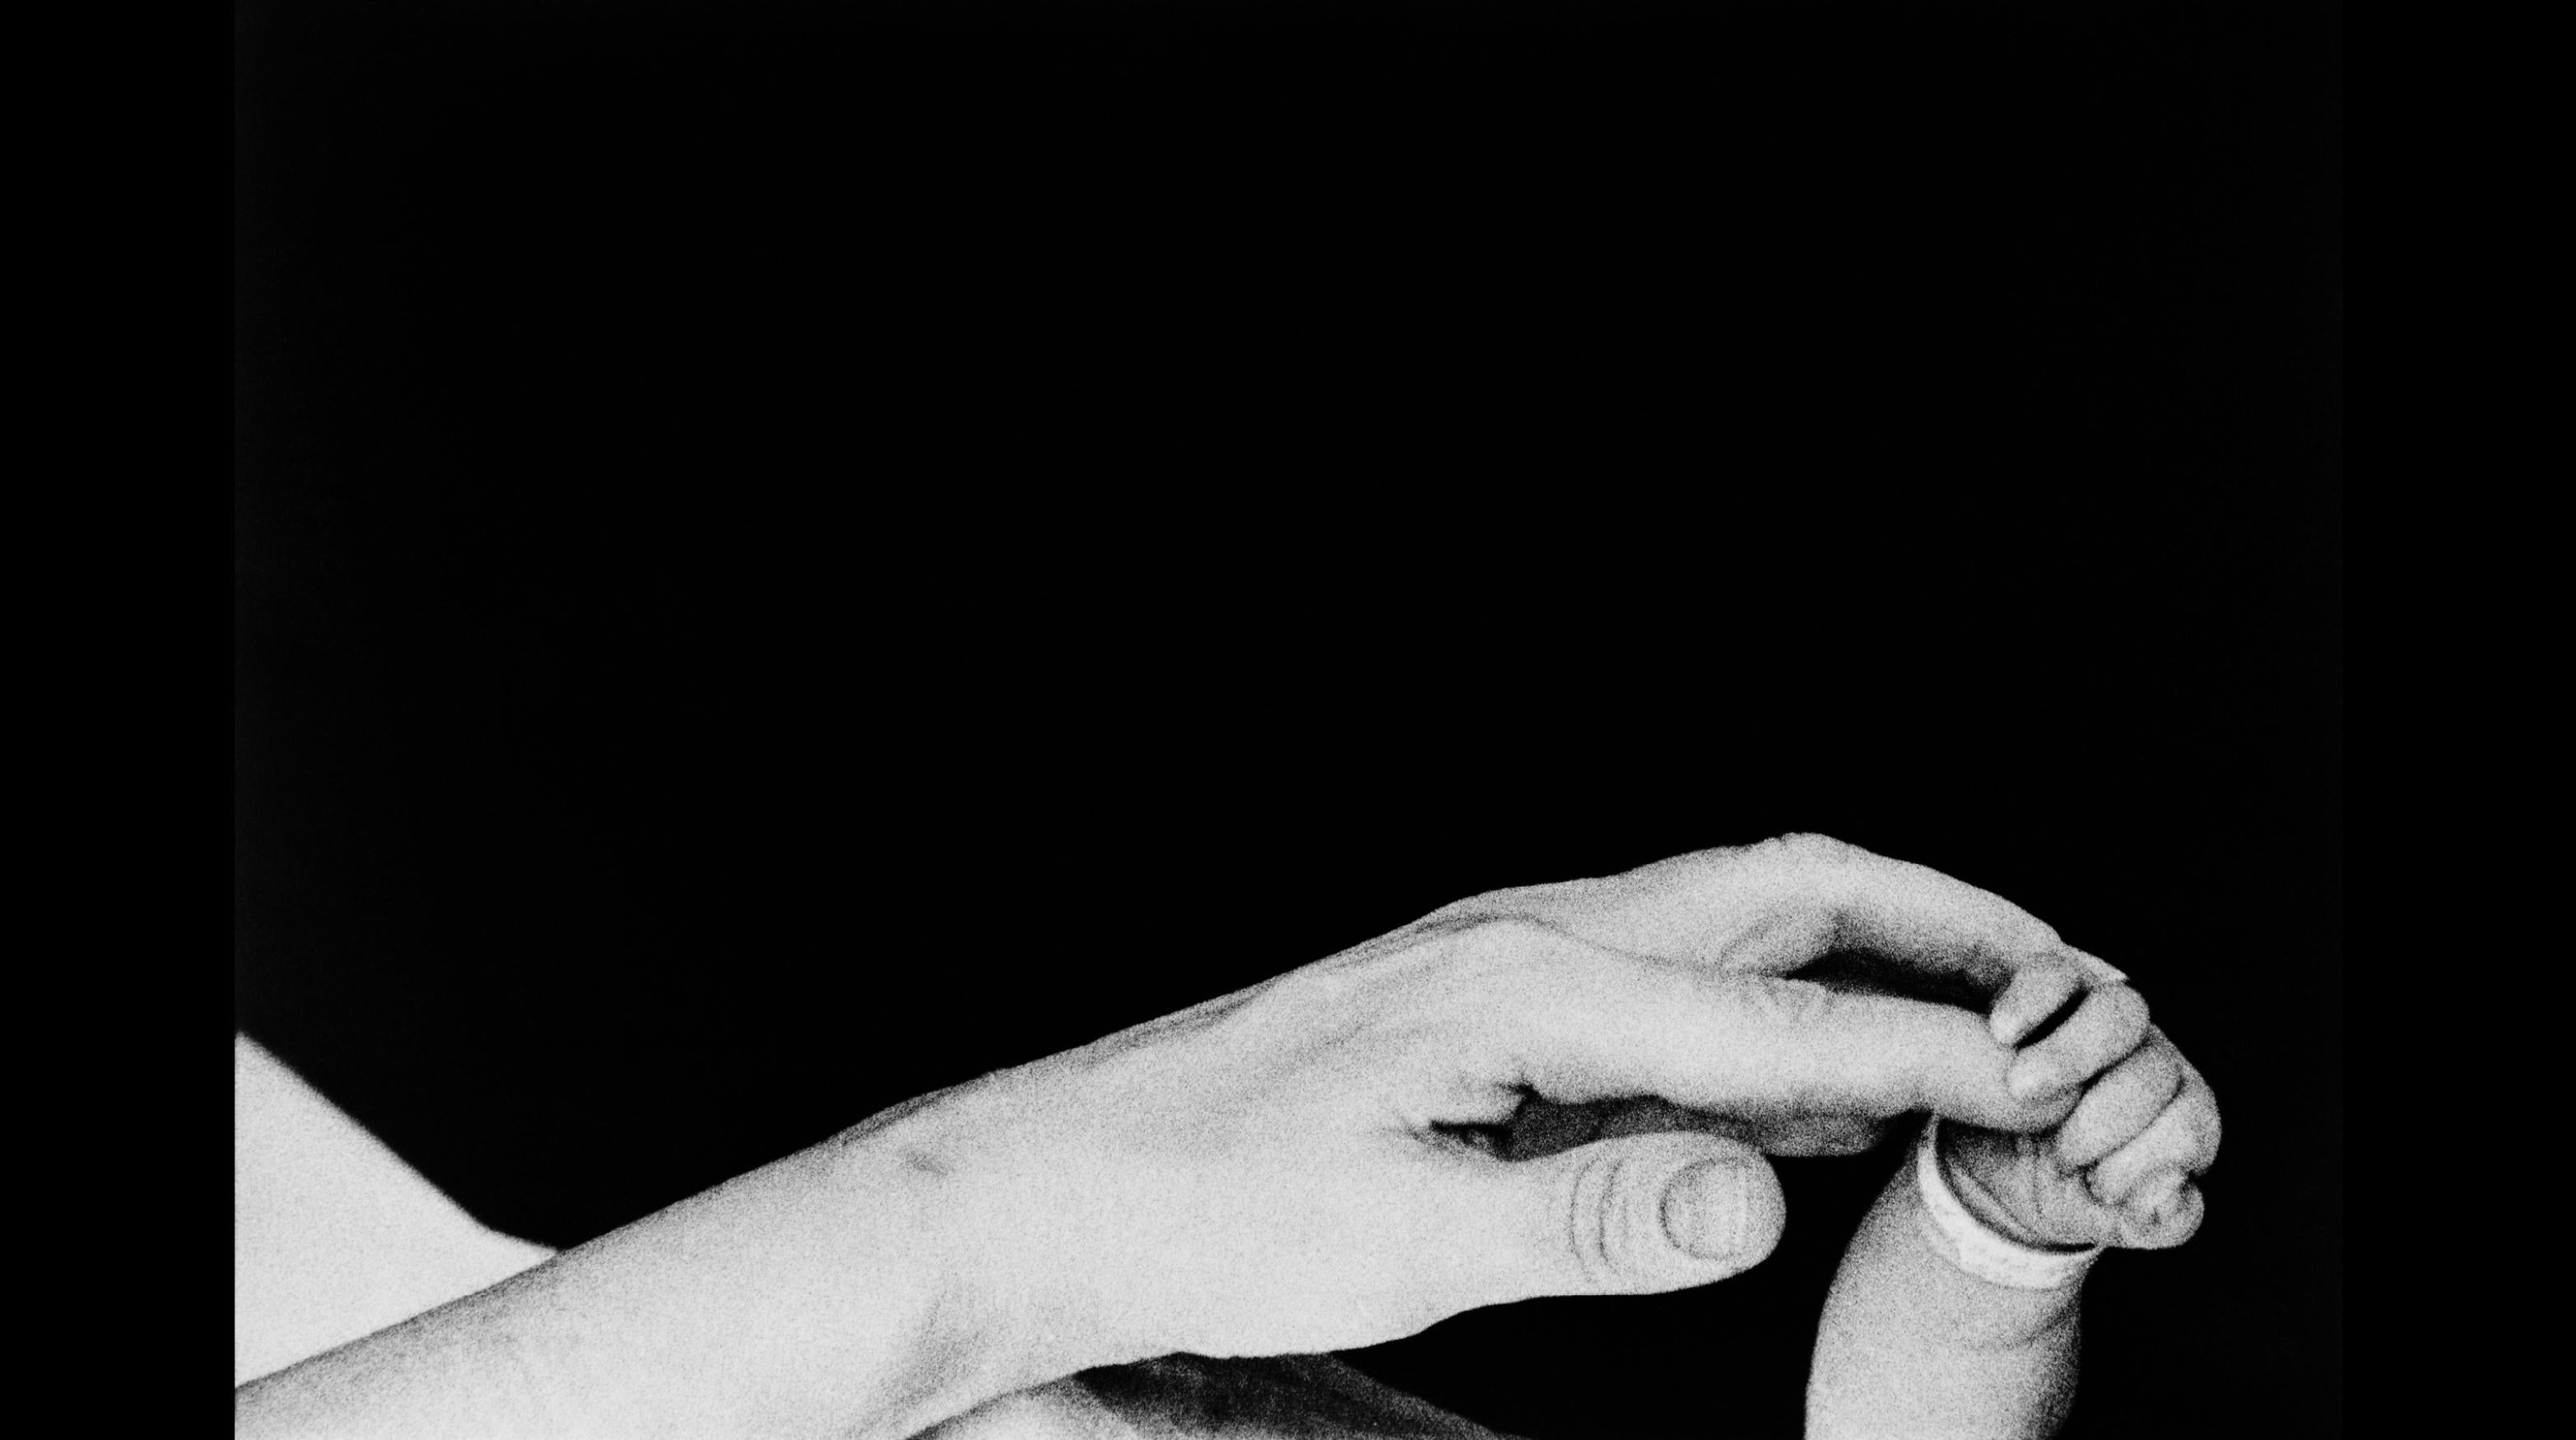 Un mannequin à Harlem, New York City en 1968.

Toutes les tailles et éditions disponibles :
20" x 24", édition de 25 + 3 épreuves d'artiste
24" x 34", édition de 25 + 3 épreuves d'artiste

" Eve Arnold, née en 1912 de parents immigrés russes à